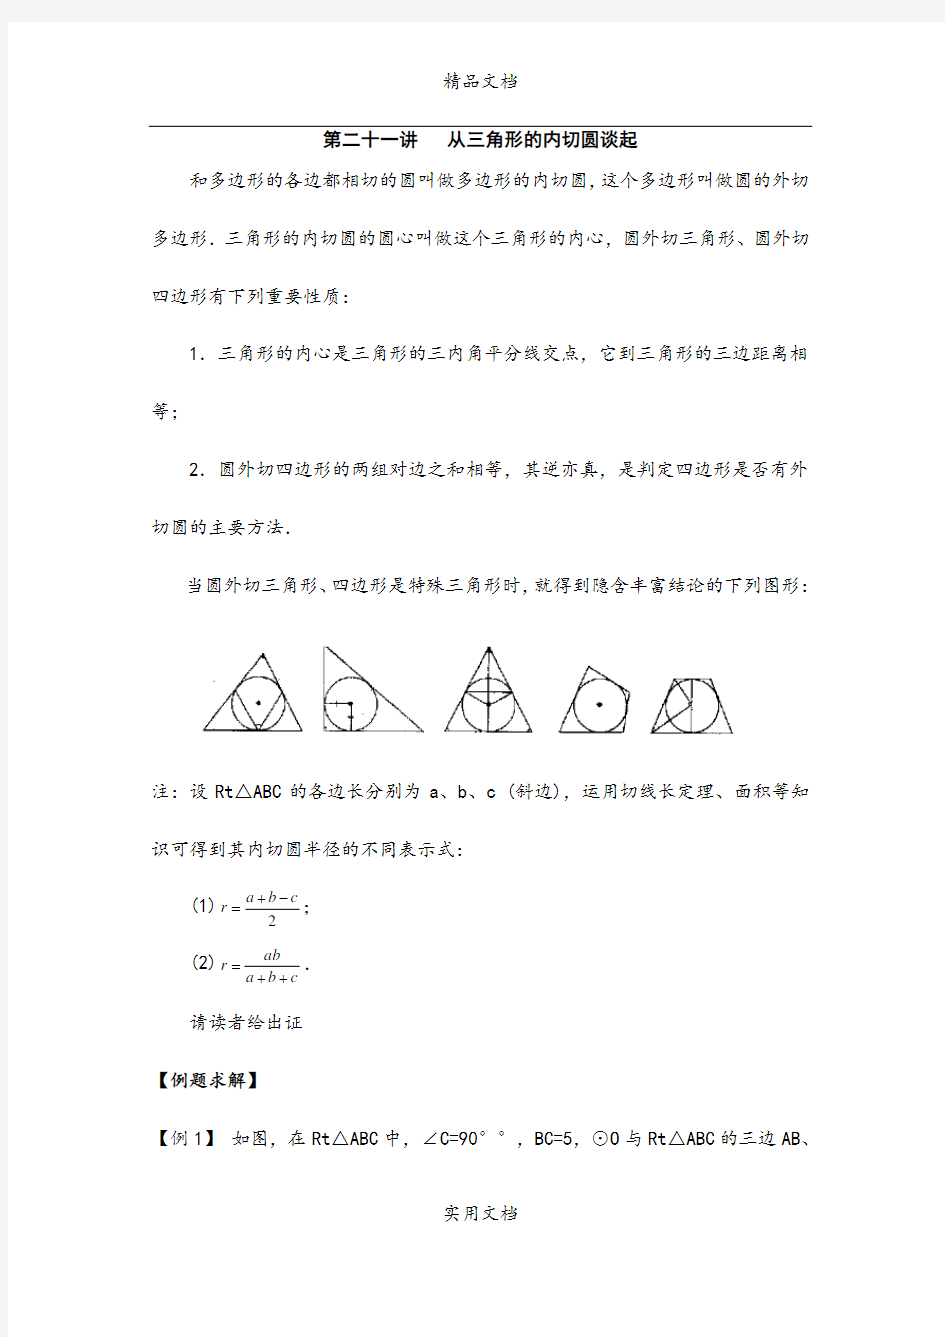 初中数学竞赛辅导讲义及习题解答 第21讲 从三角形的内切圆谈起